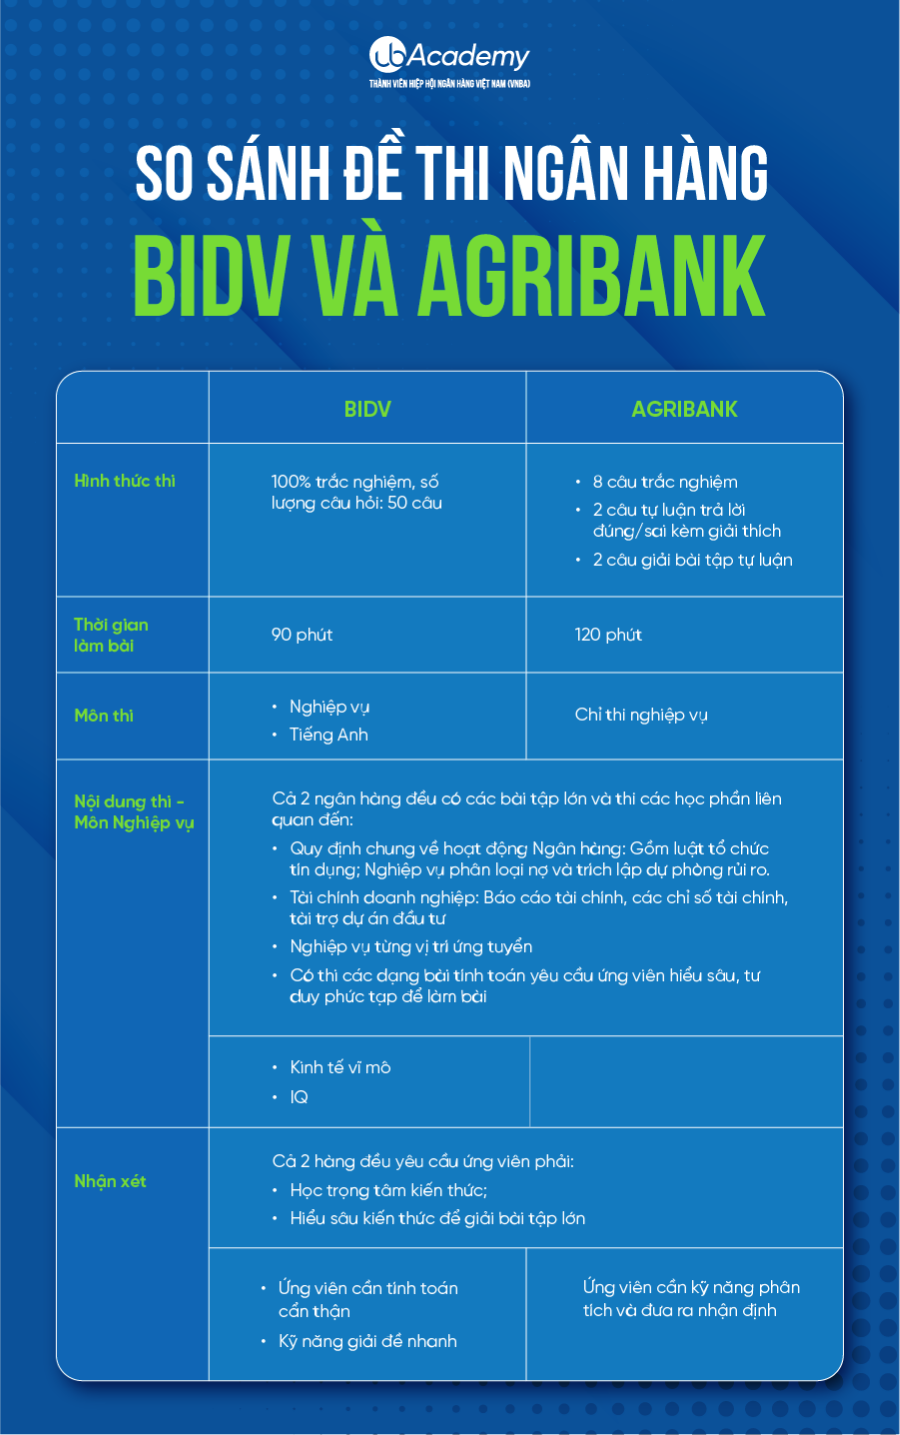 So sánh đề thi Agribank và BIDV